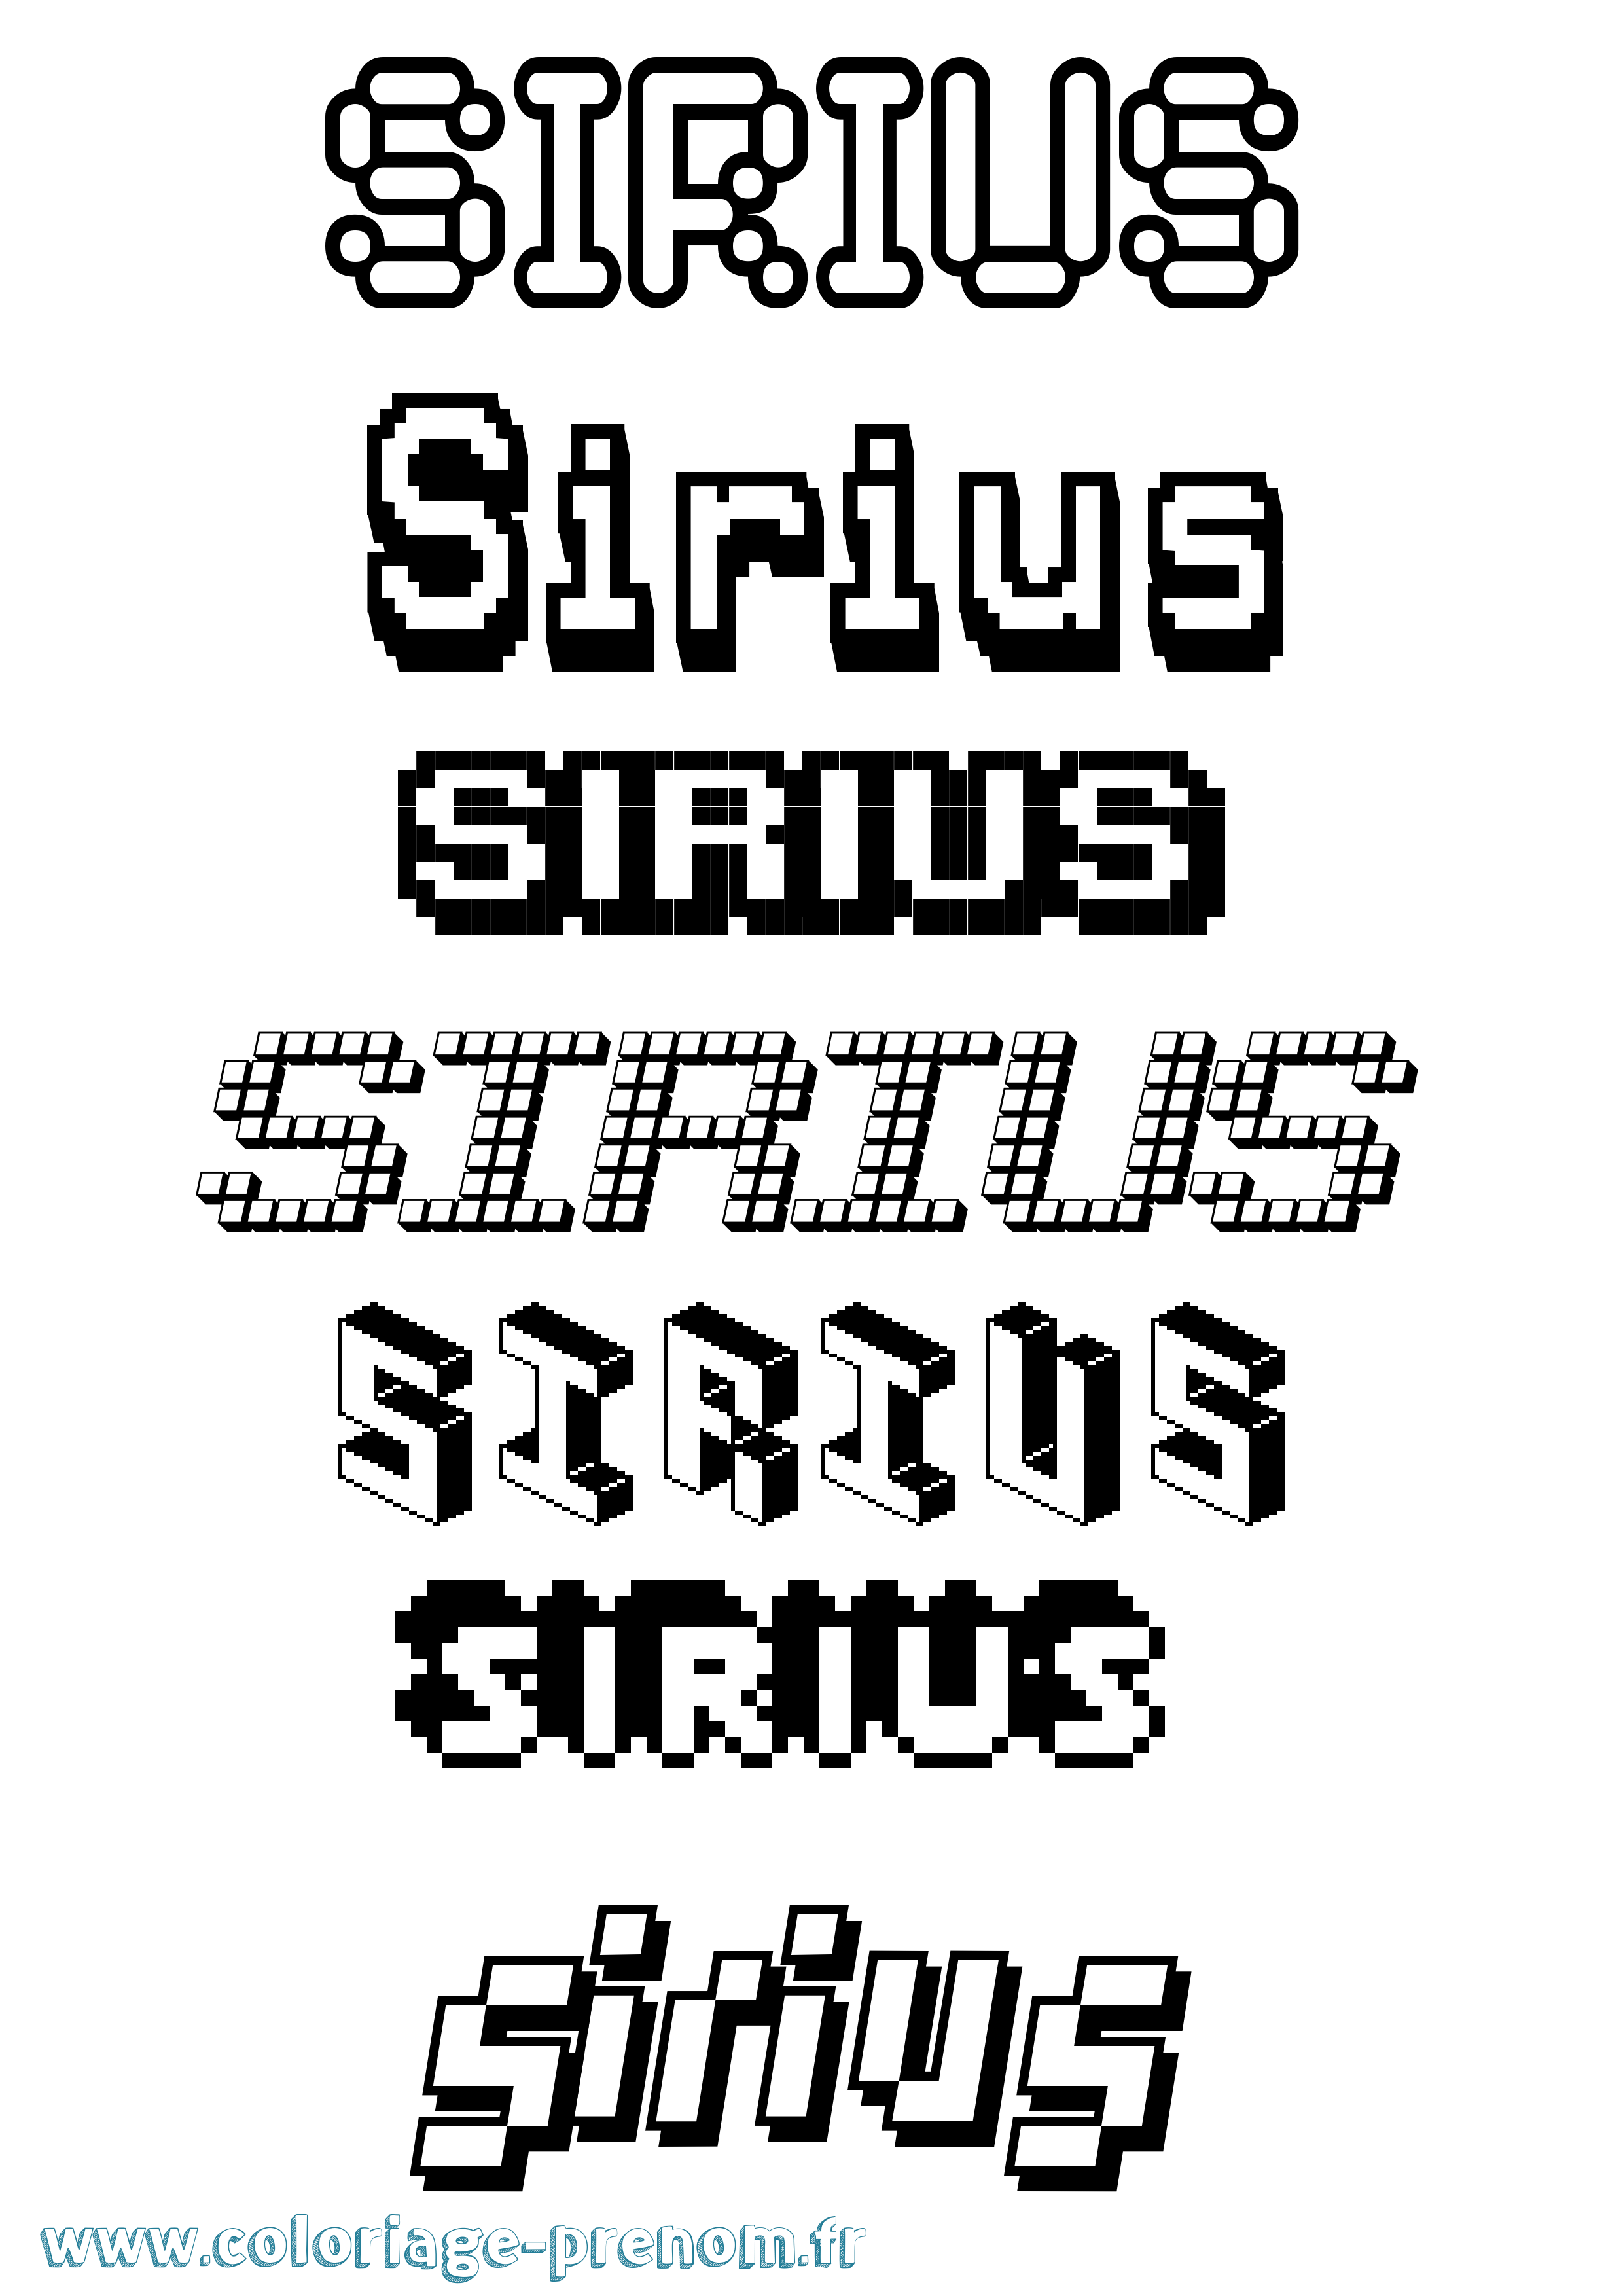 Coloriage prénom Sirius Pixel